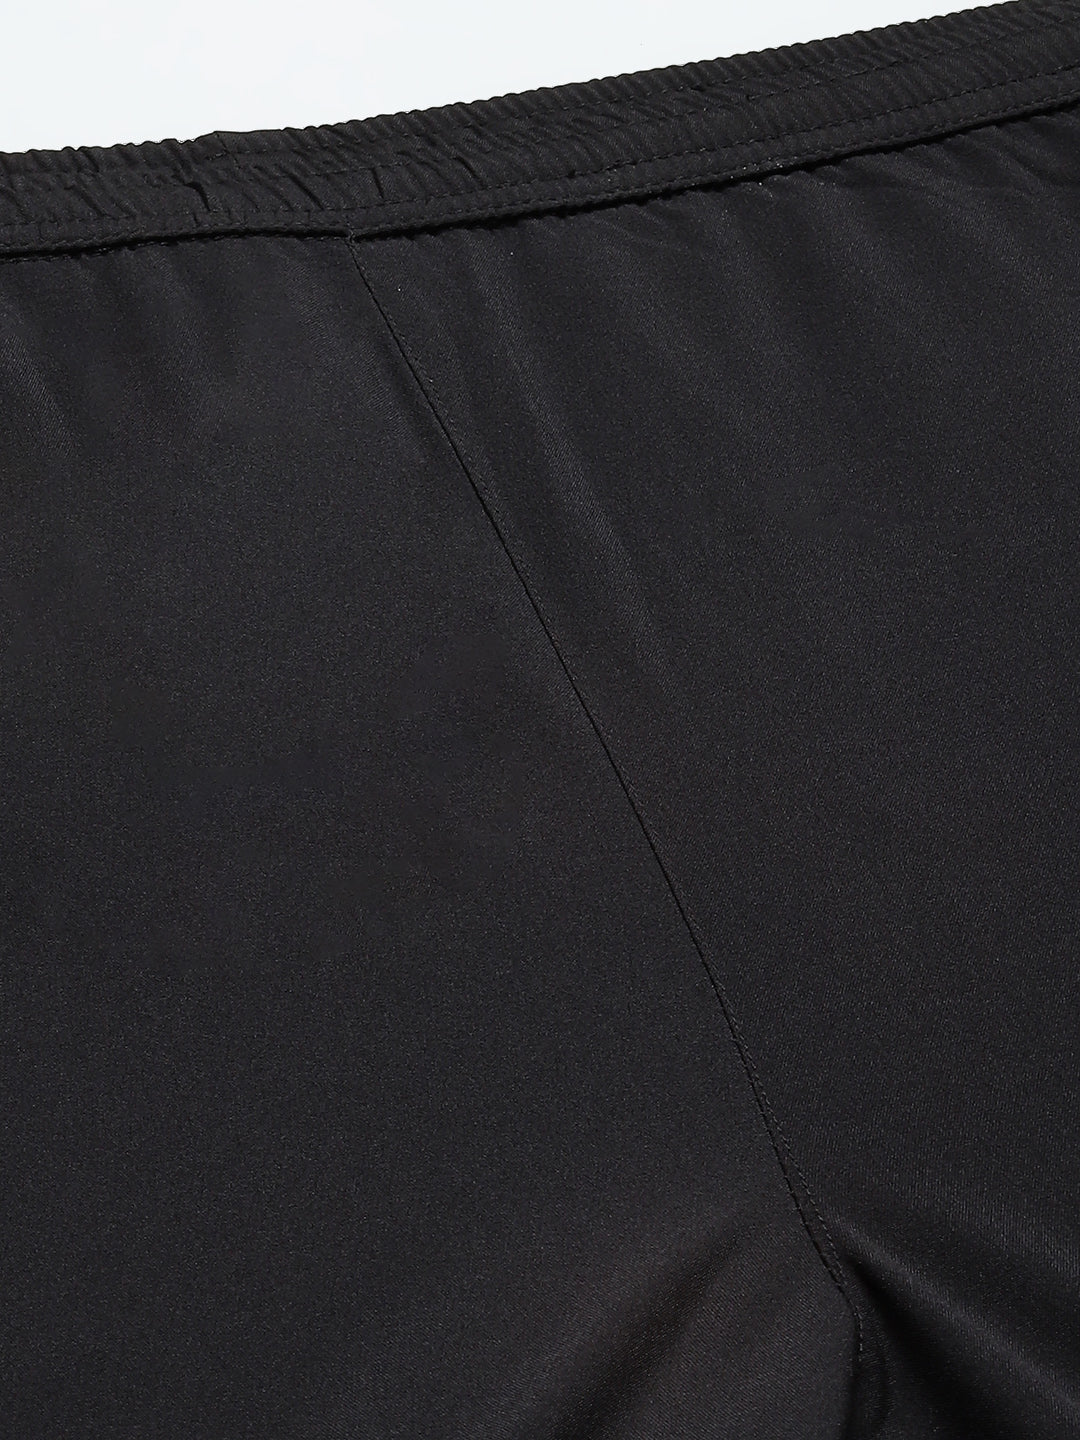 Lycra Nike Premium Dri Fit Track Pants, Printed at Rs 195/piece in Varanasi  | ID: 2851421182573